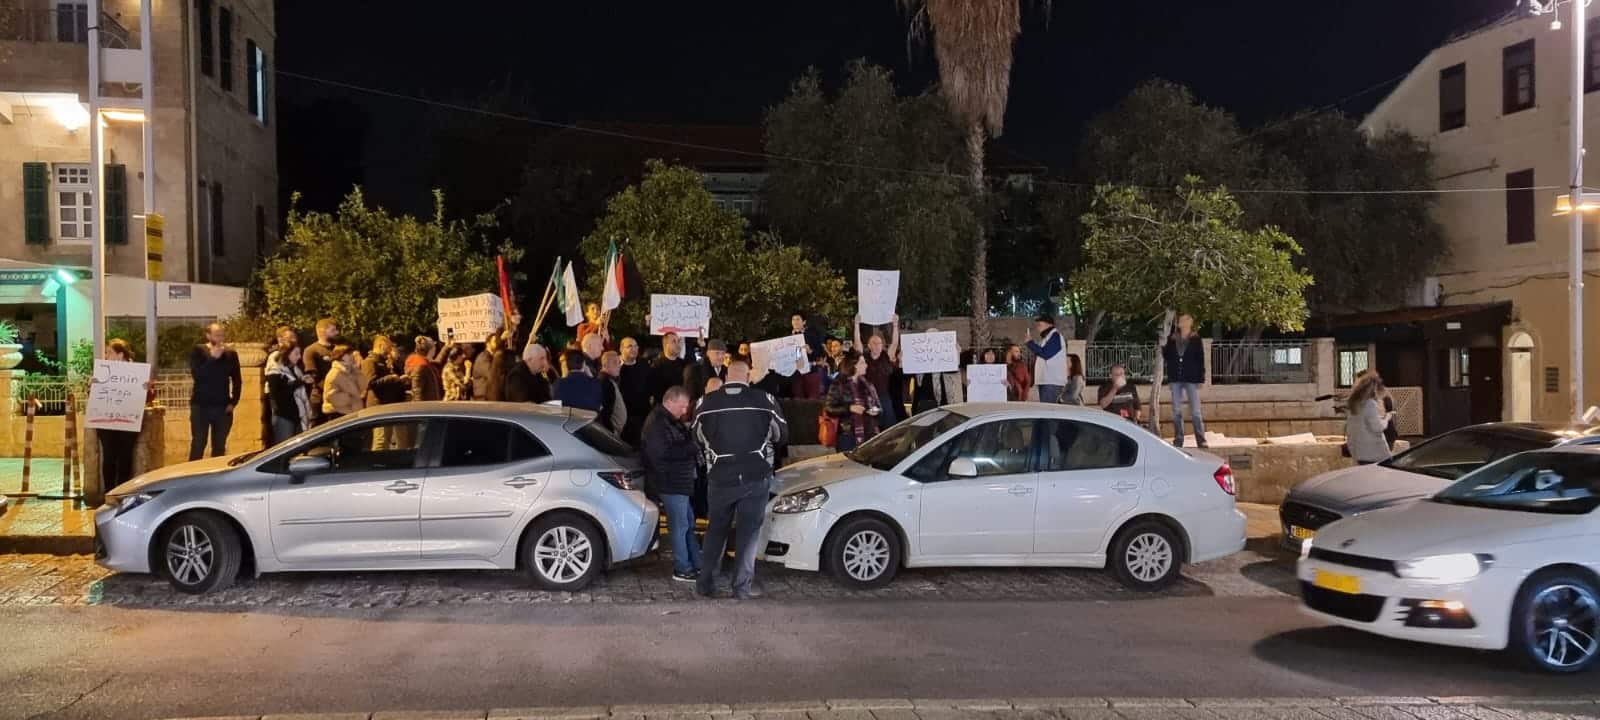 אפס סבלנות: הורדת דגלי אש"ף ומעצרים בשדרות בן גוריון חיפה | צפו בתיעוד